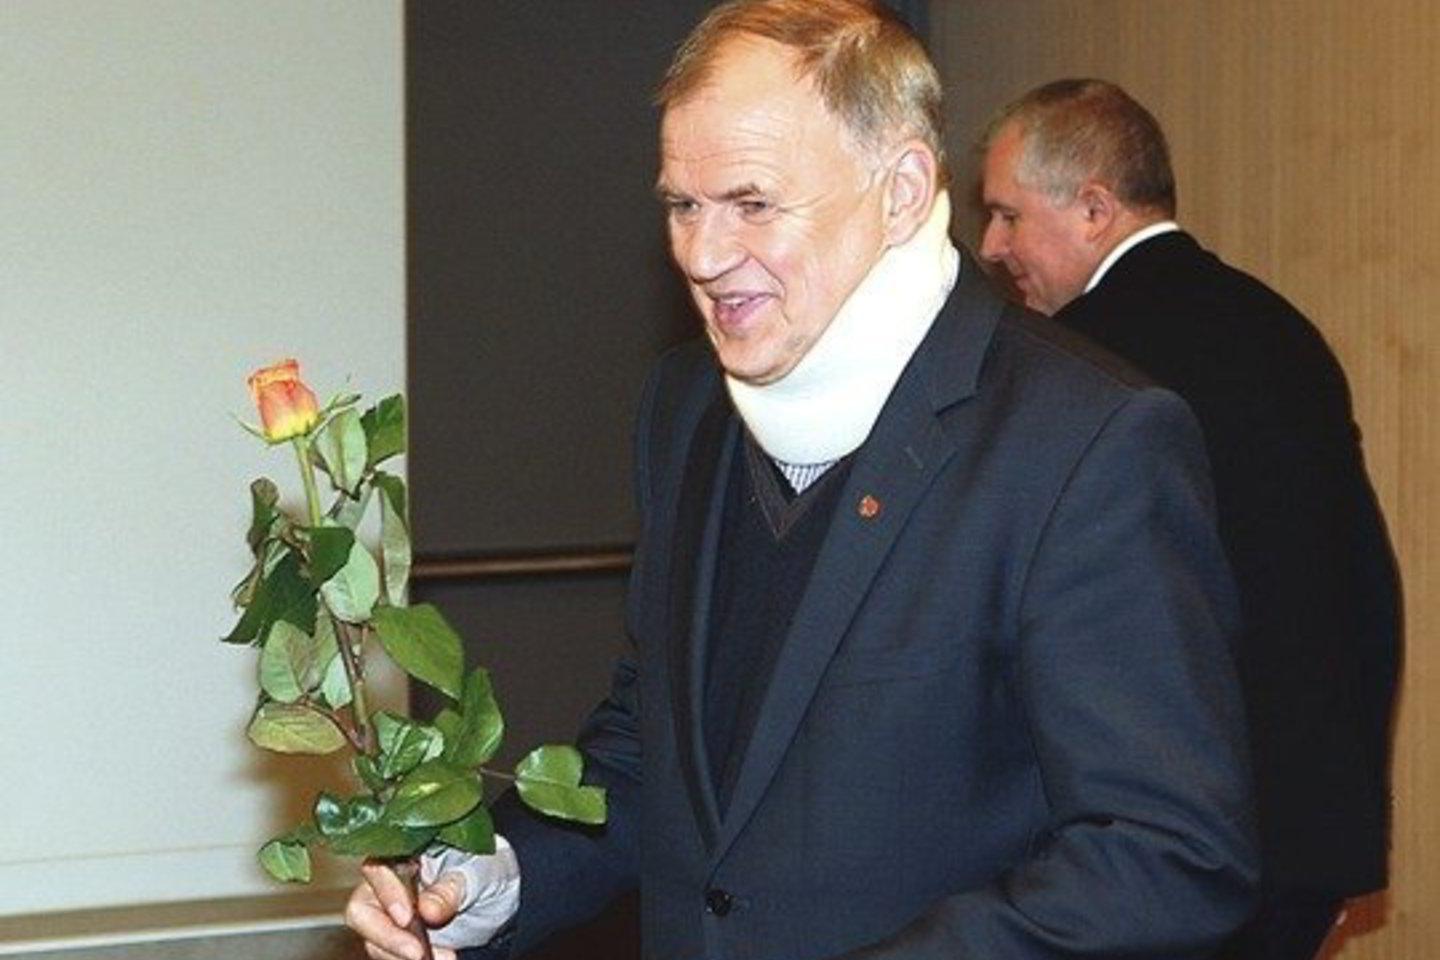 Dar visai nepasveikęs V. Andriukaitis praėjusią savaitę skubėjo į Seimą prisiekti.<br>R. Danisevičiaus nuotrauka iš archyvo